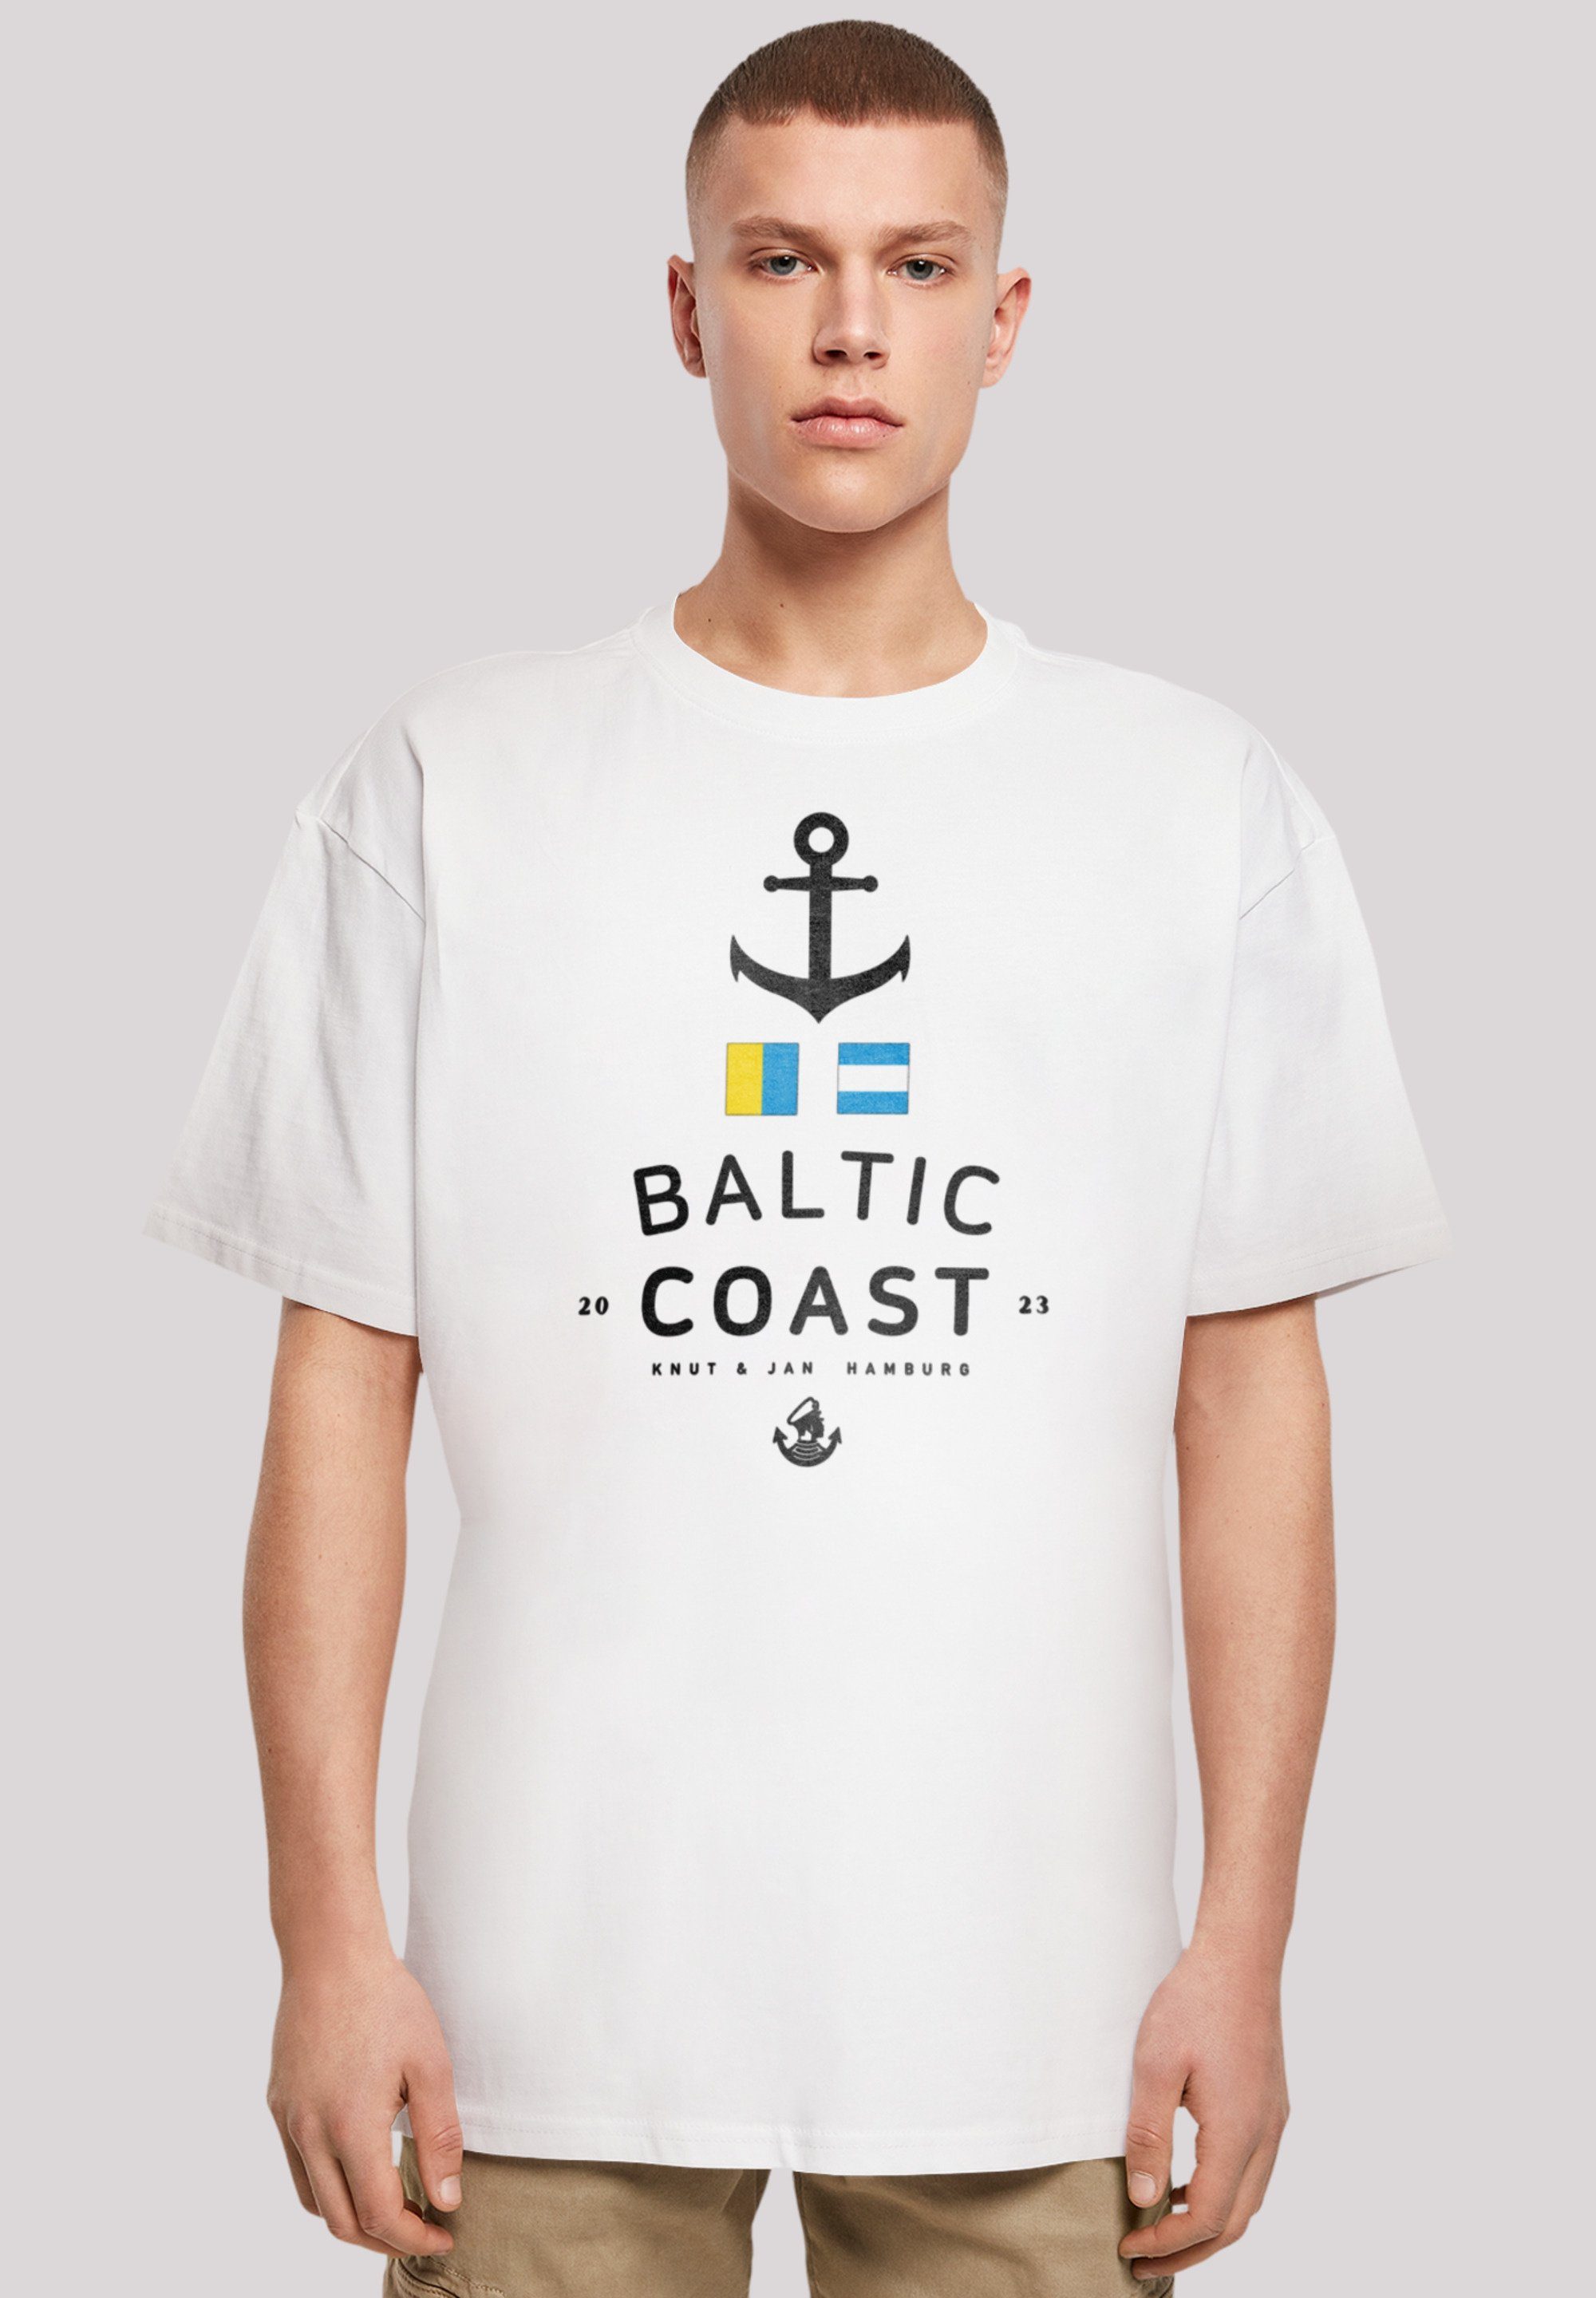 F4NT4STIC T-Shirt Ostsee Baltic Sea Knut & Jan Hamburg Print weiß